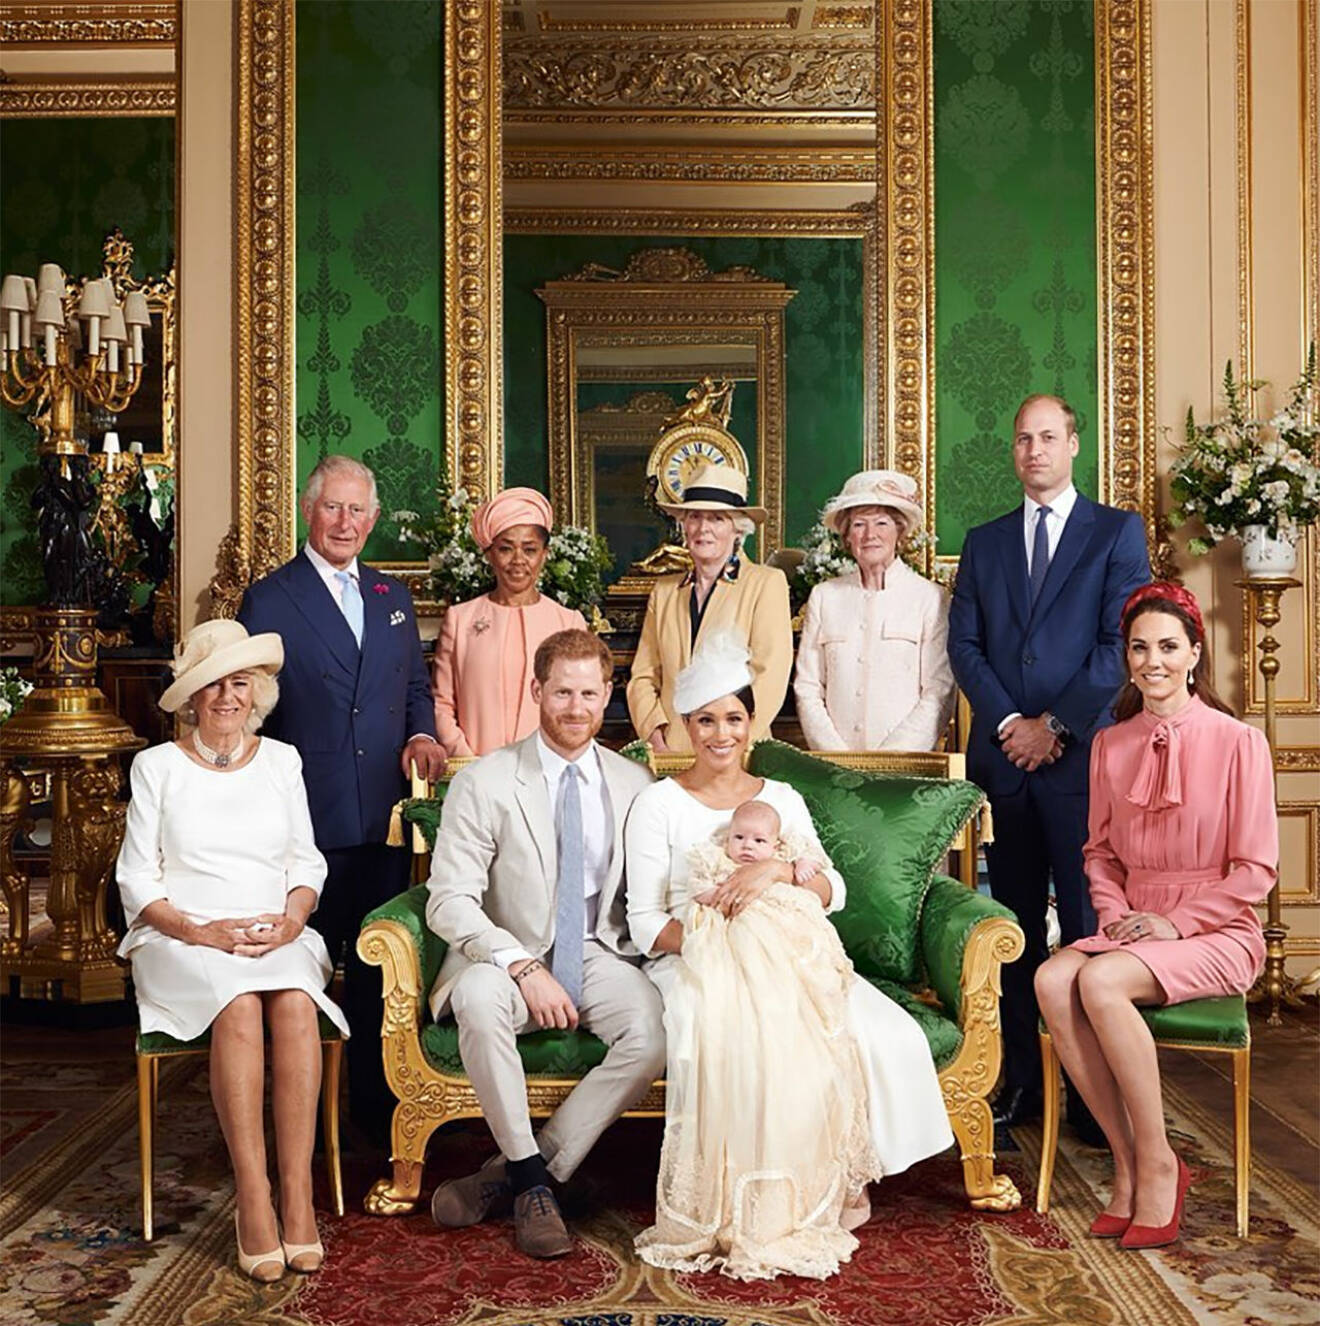 Från vänster i bakre raden ser vi prins Charles, Doria Ragland, Dianas två systrar, prins William. Främre raden från vänster ser vi Camilla, Harry, Meghan och Archie och till sist Kate. 